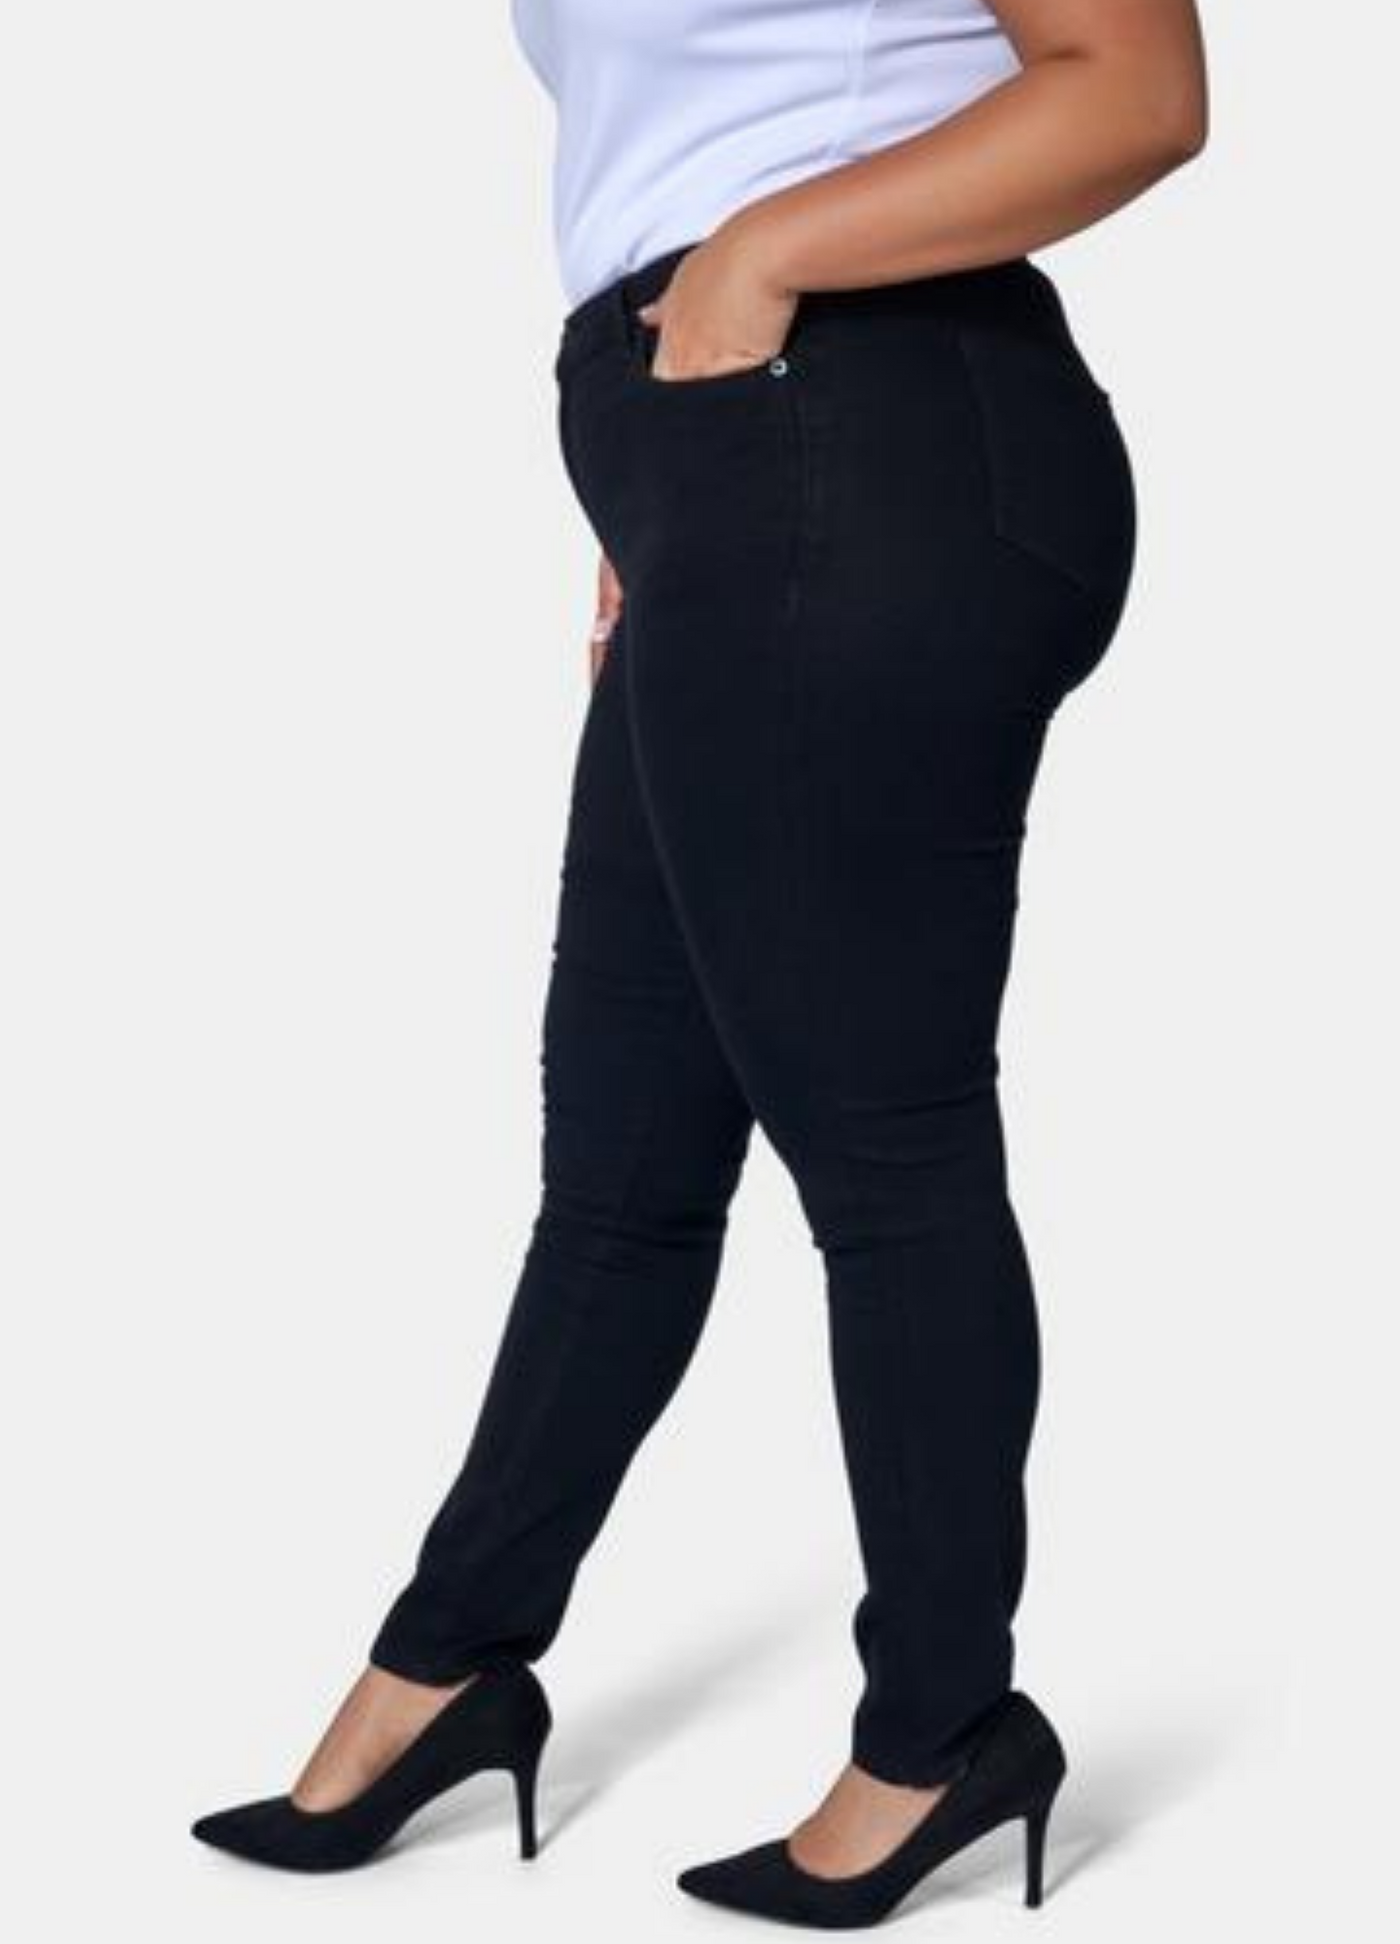 Black Skinny Jean shot on curve model